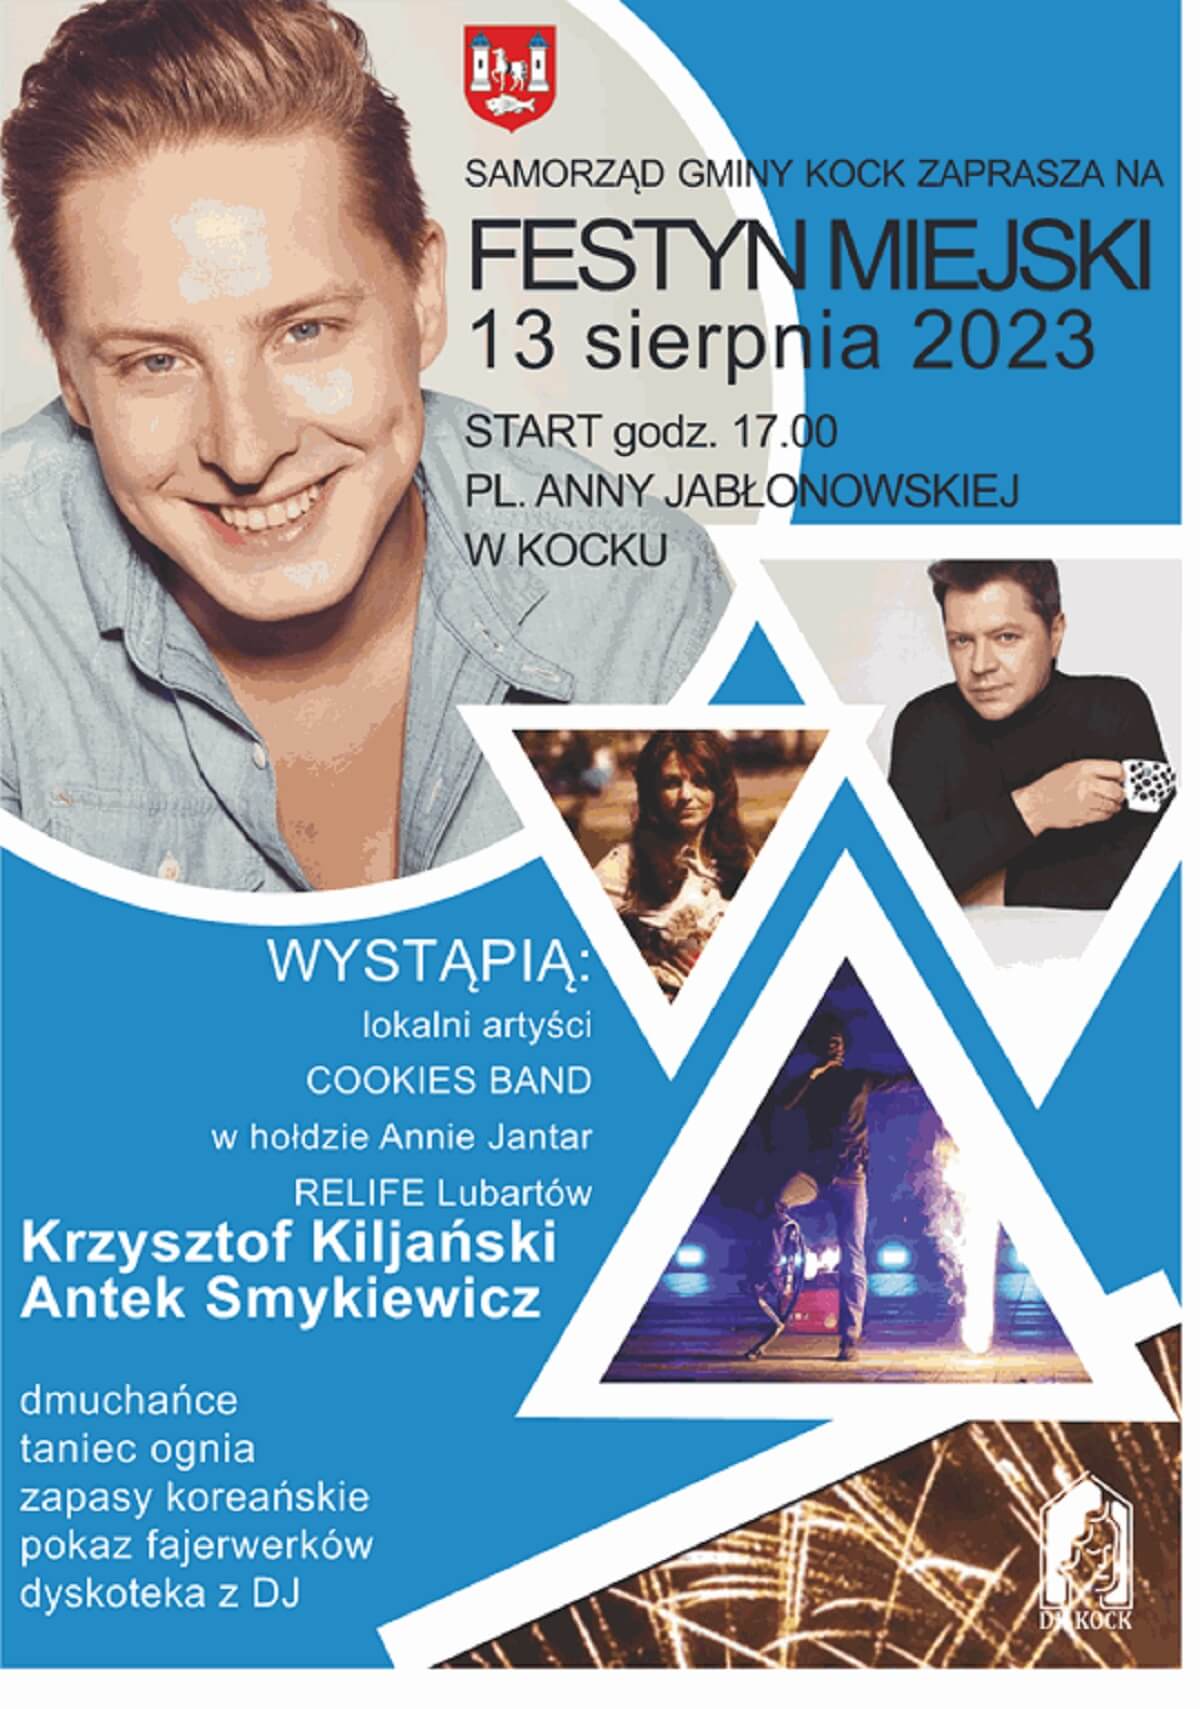 Festyn Miejski w Kocku 2023 - plakat, program wydarzenia